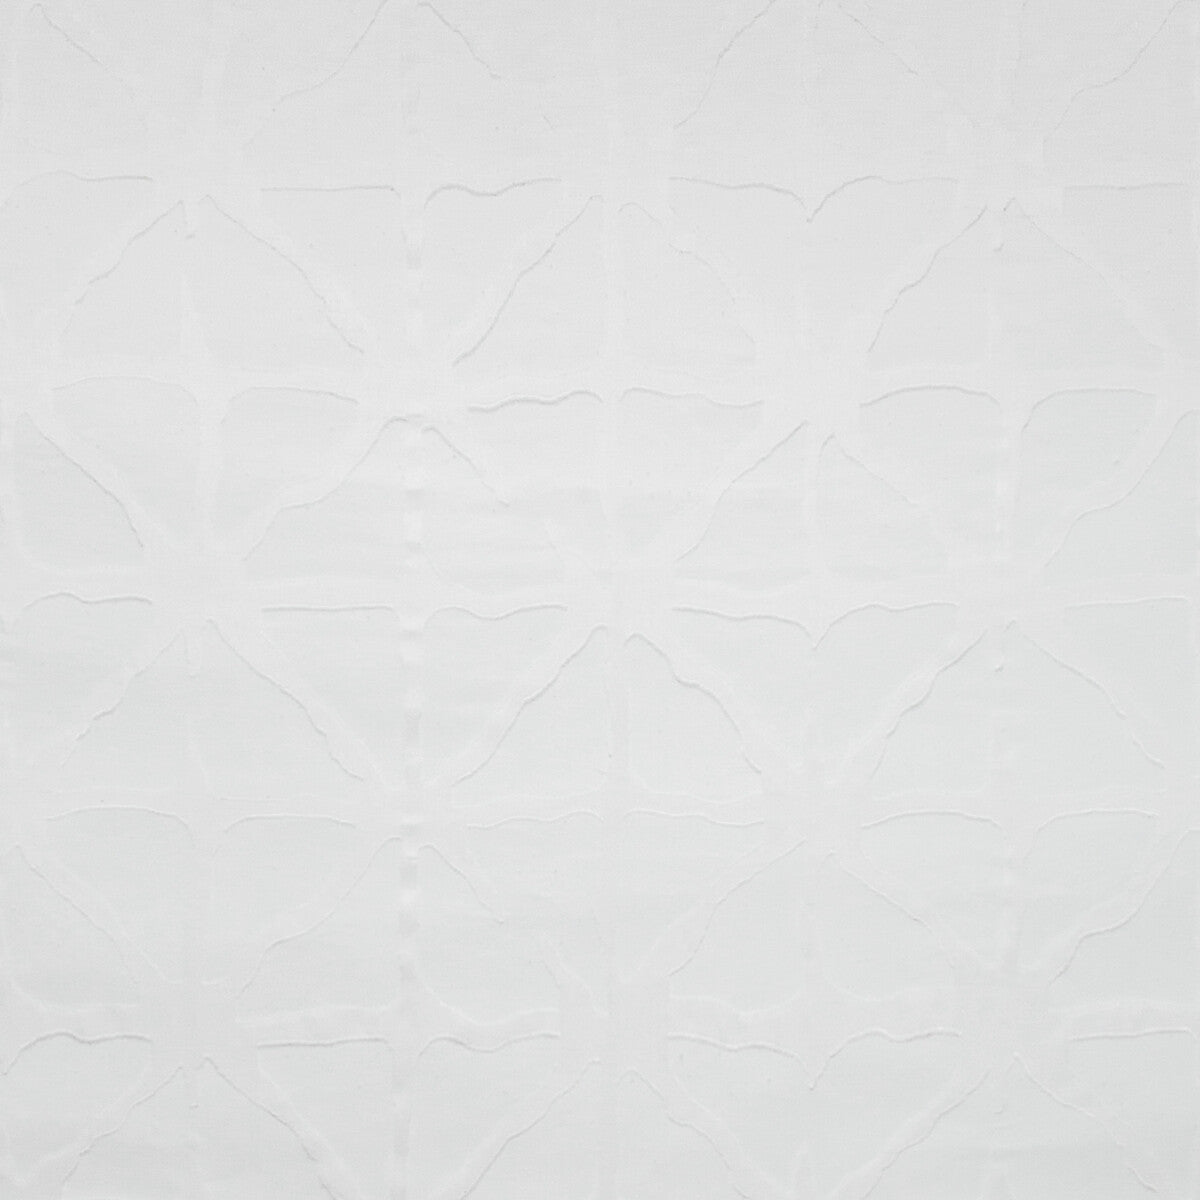 Kravet Basics fabric in 4757-1 color - pattern 4757.1.0 - by Kravet Basics